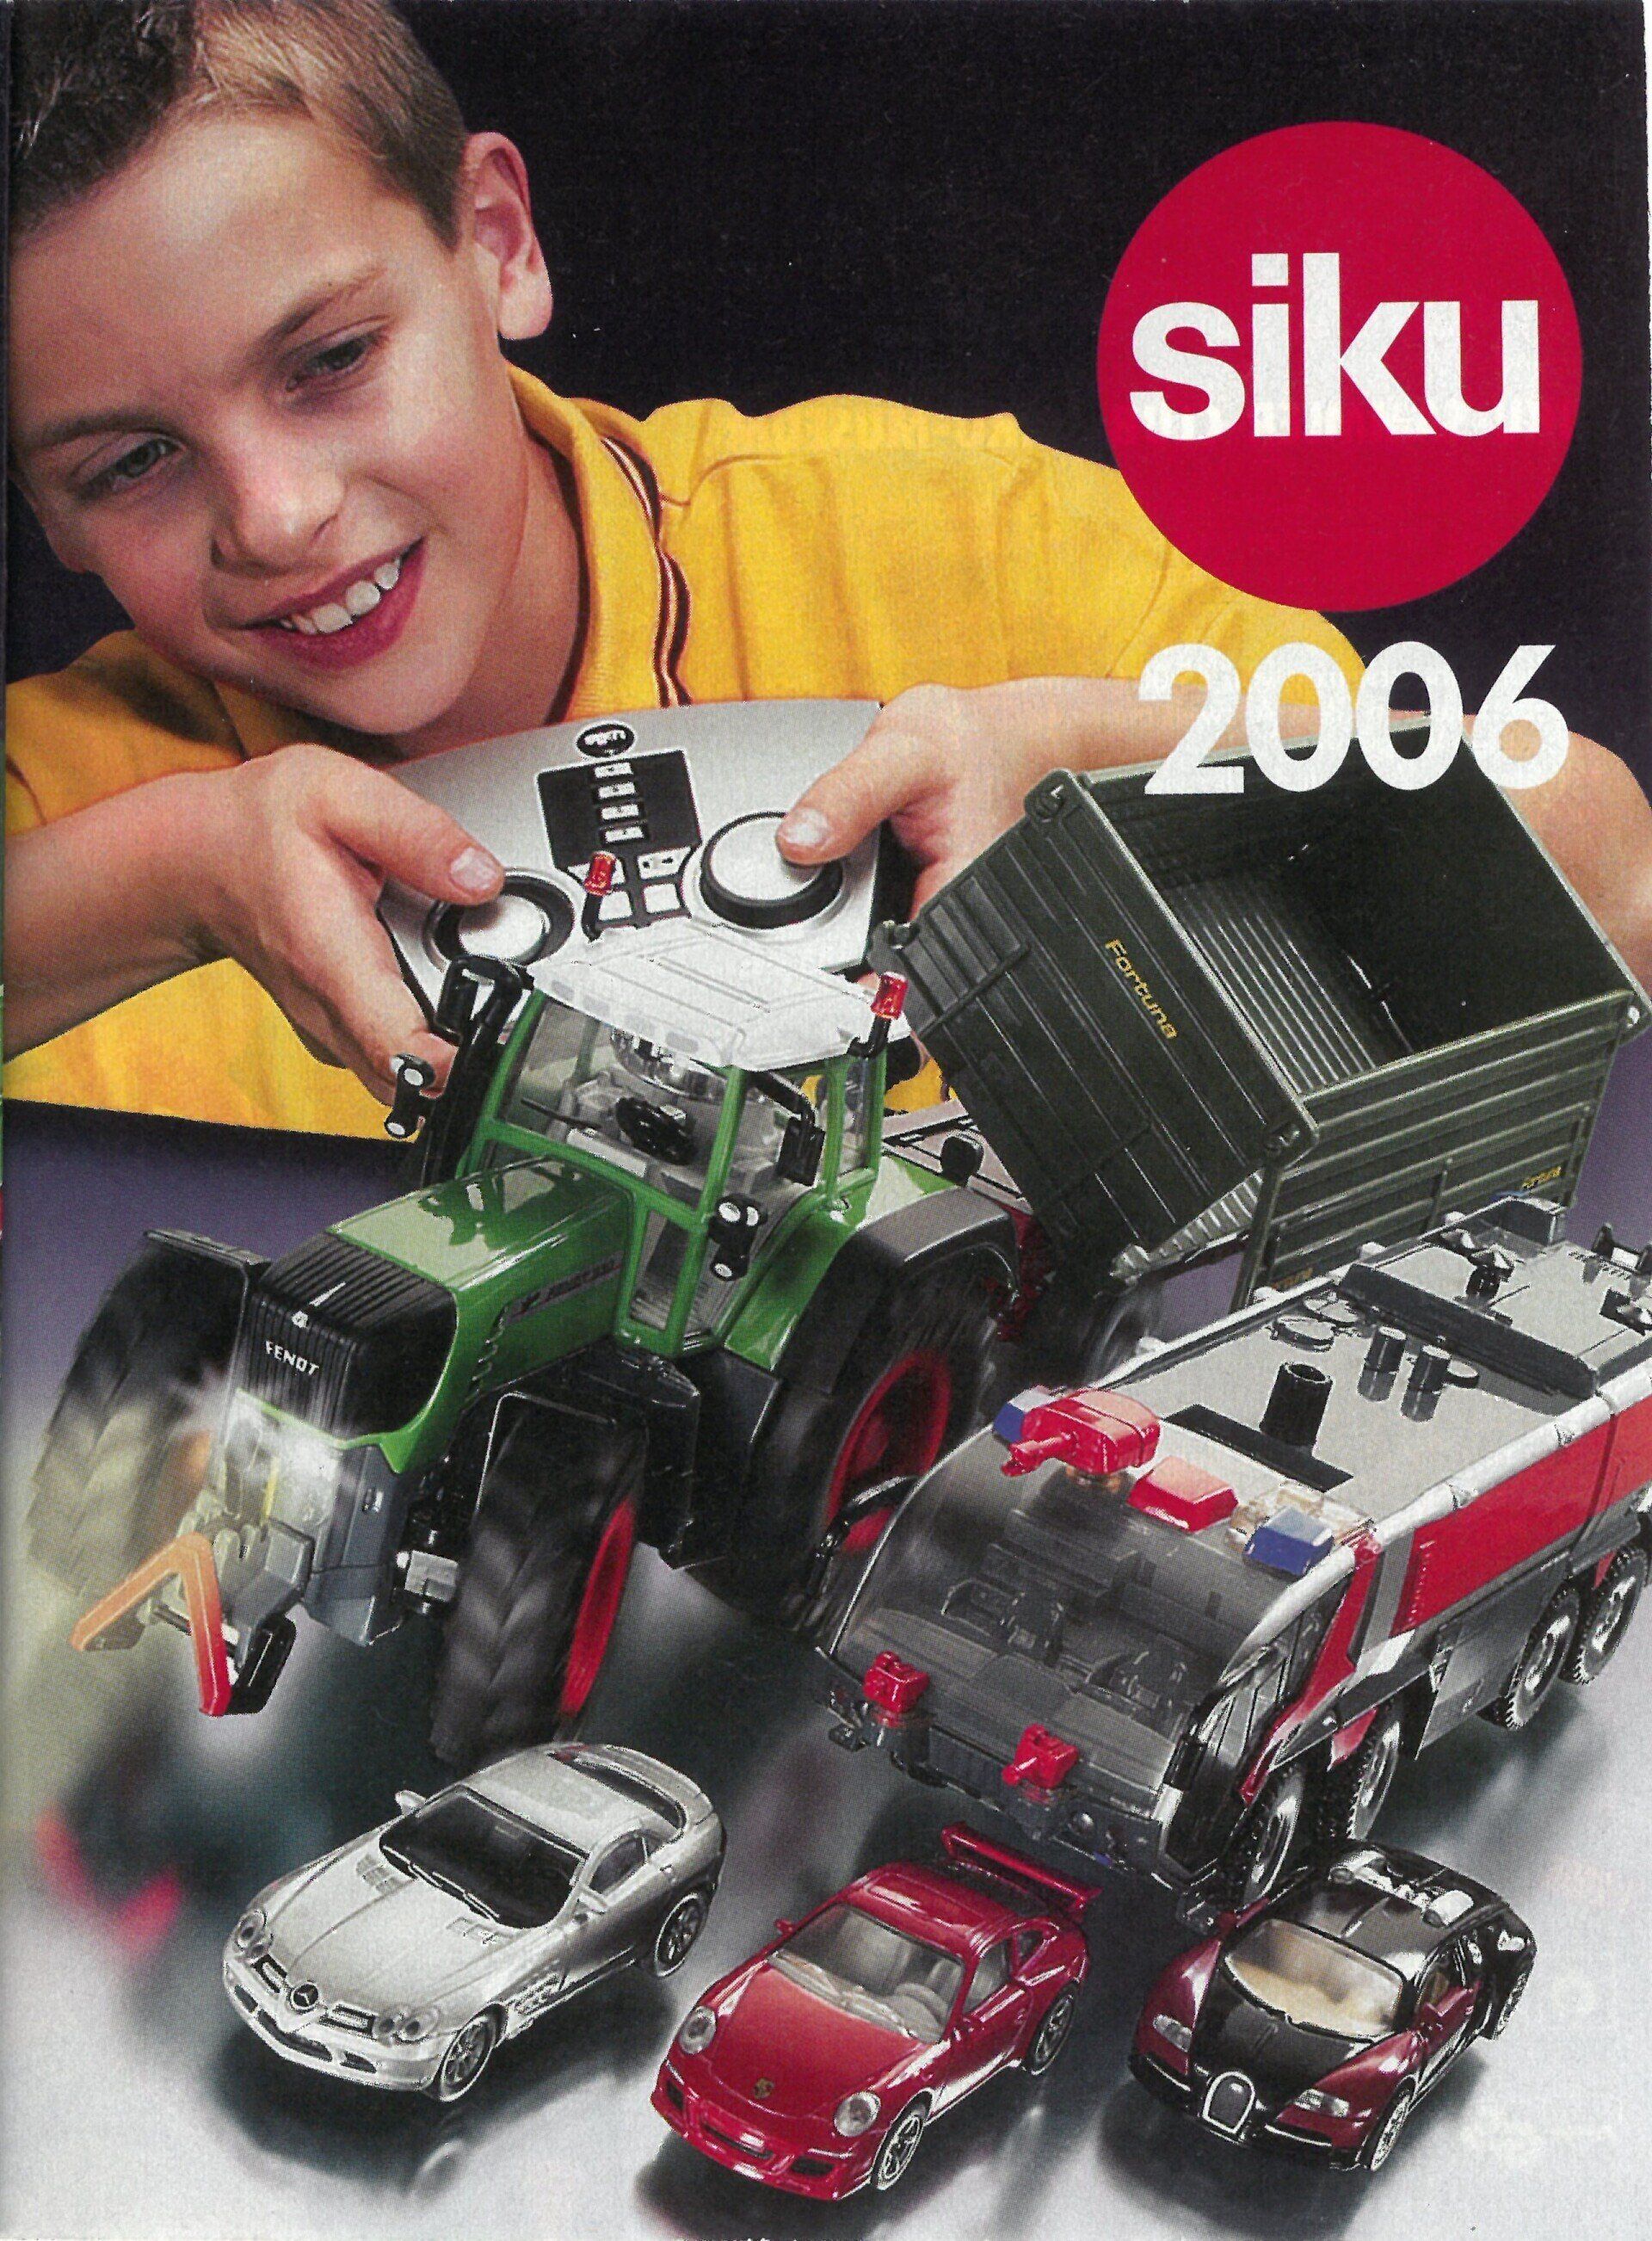 Siku catalogue 2006